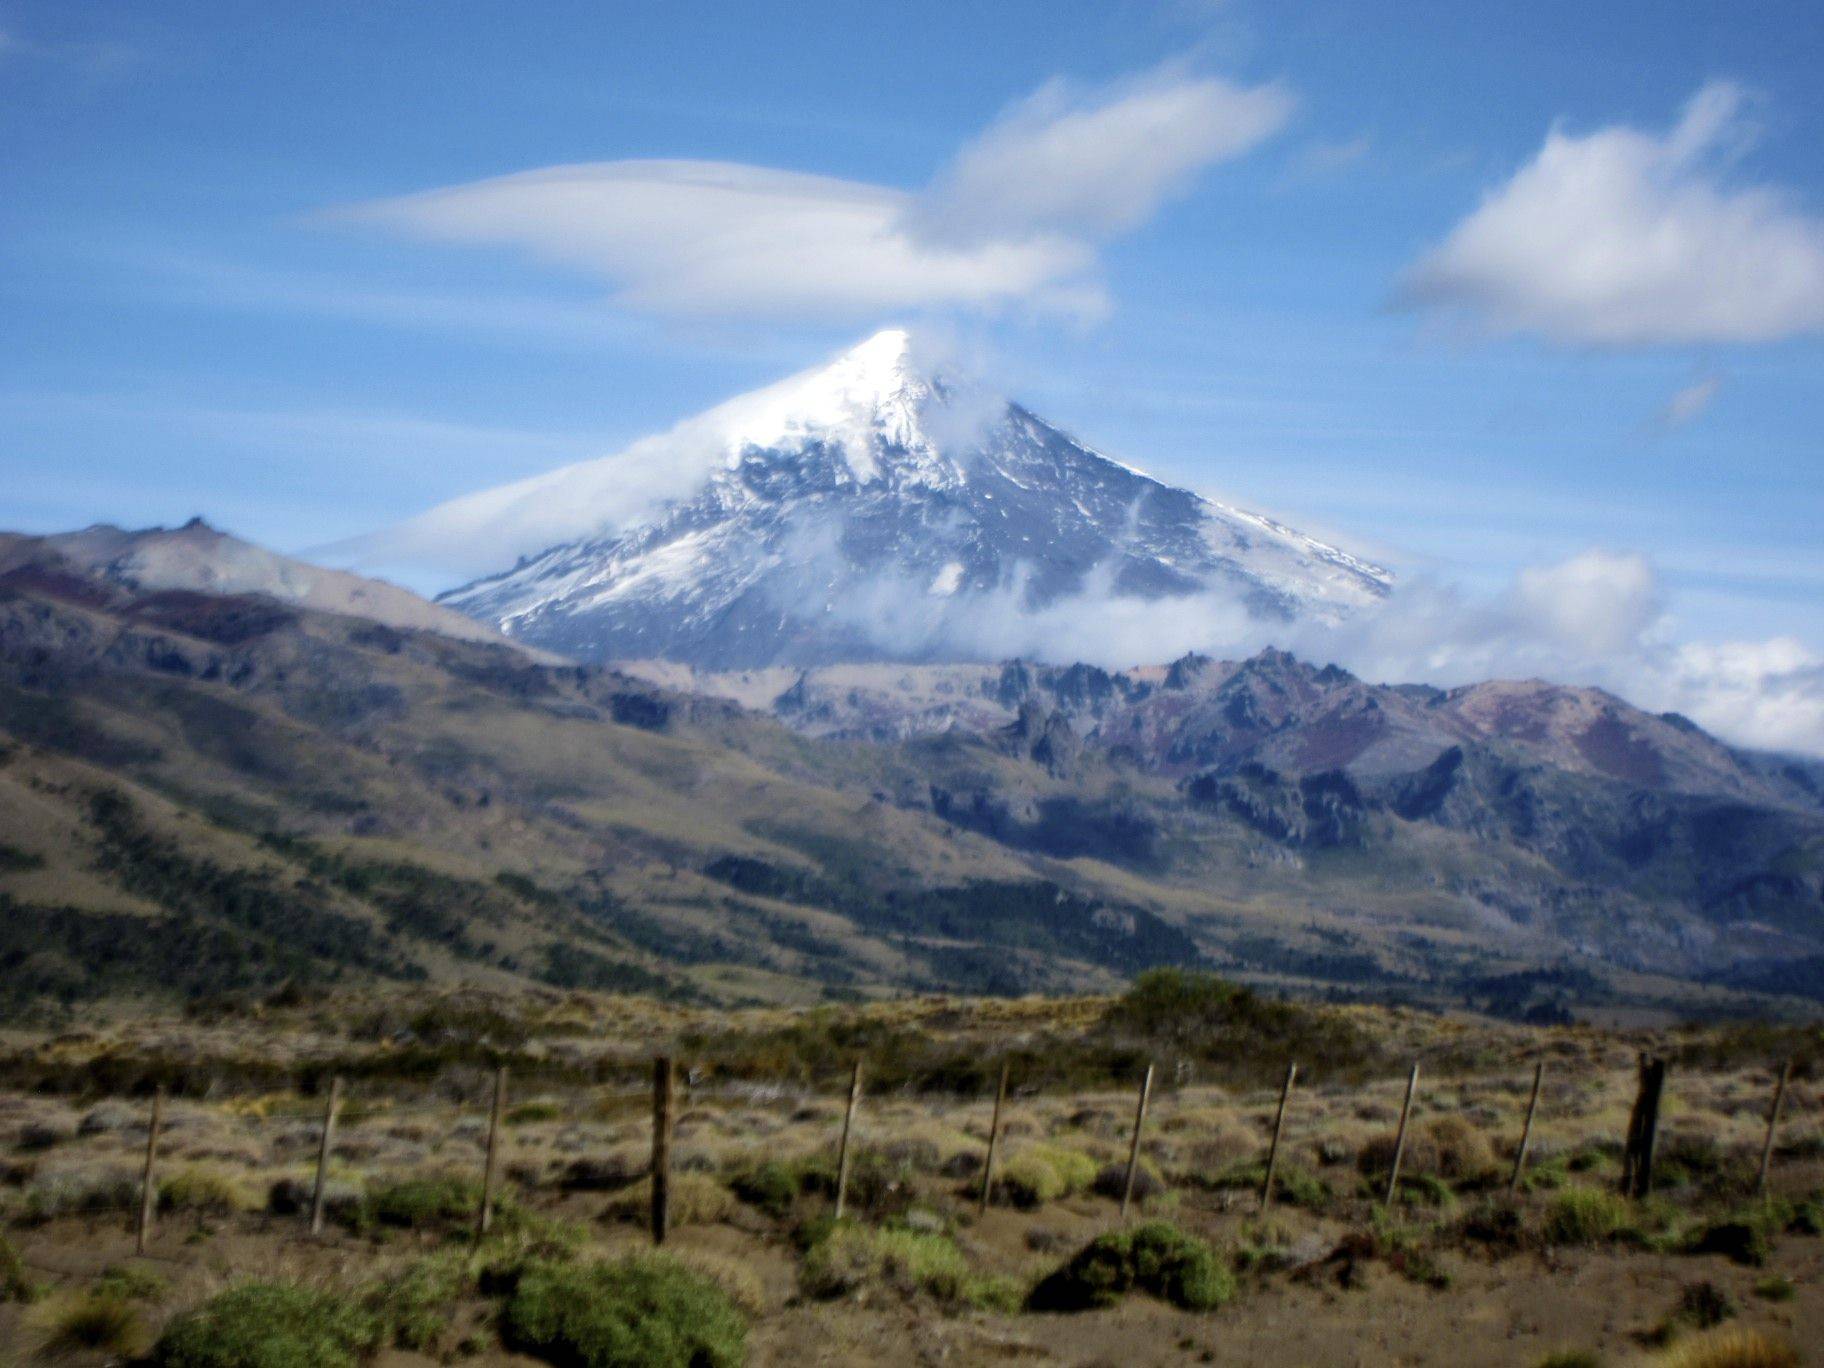 San Martin de Los Andes ed i suoi dintorni